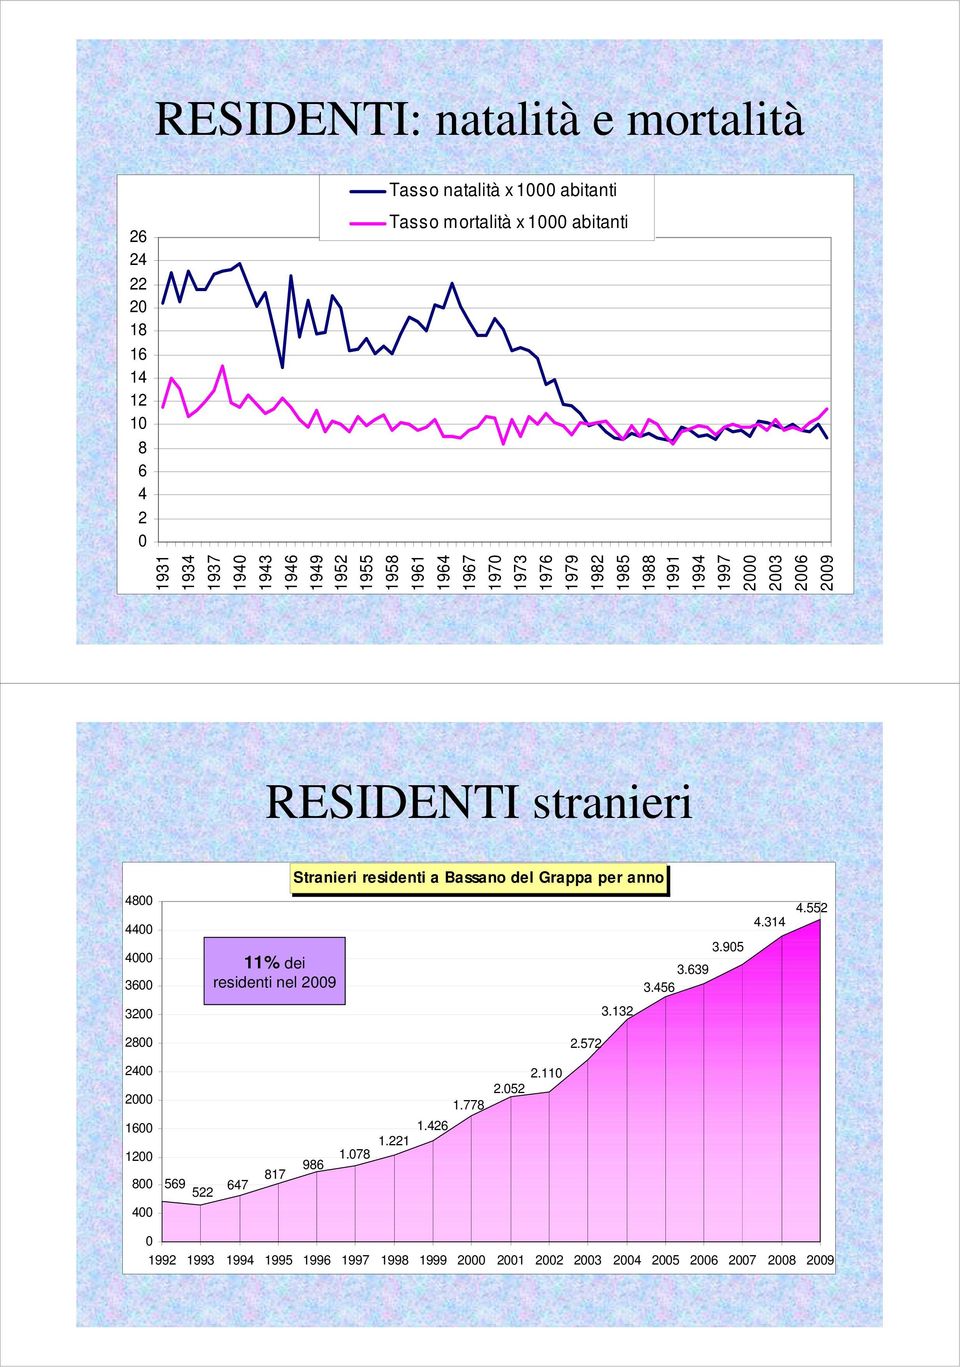 Stranieri residenti a Bassano del Grappa per anno 48 44 4 36 11% dei residenti nel 29 3.639 3.456 3.95 4.314 4.552 32 28 2.572 3.